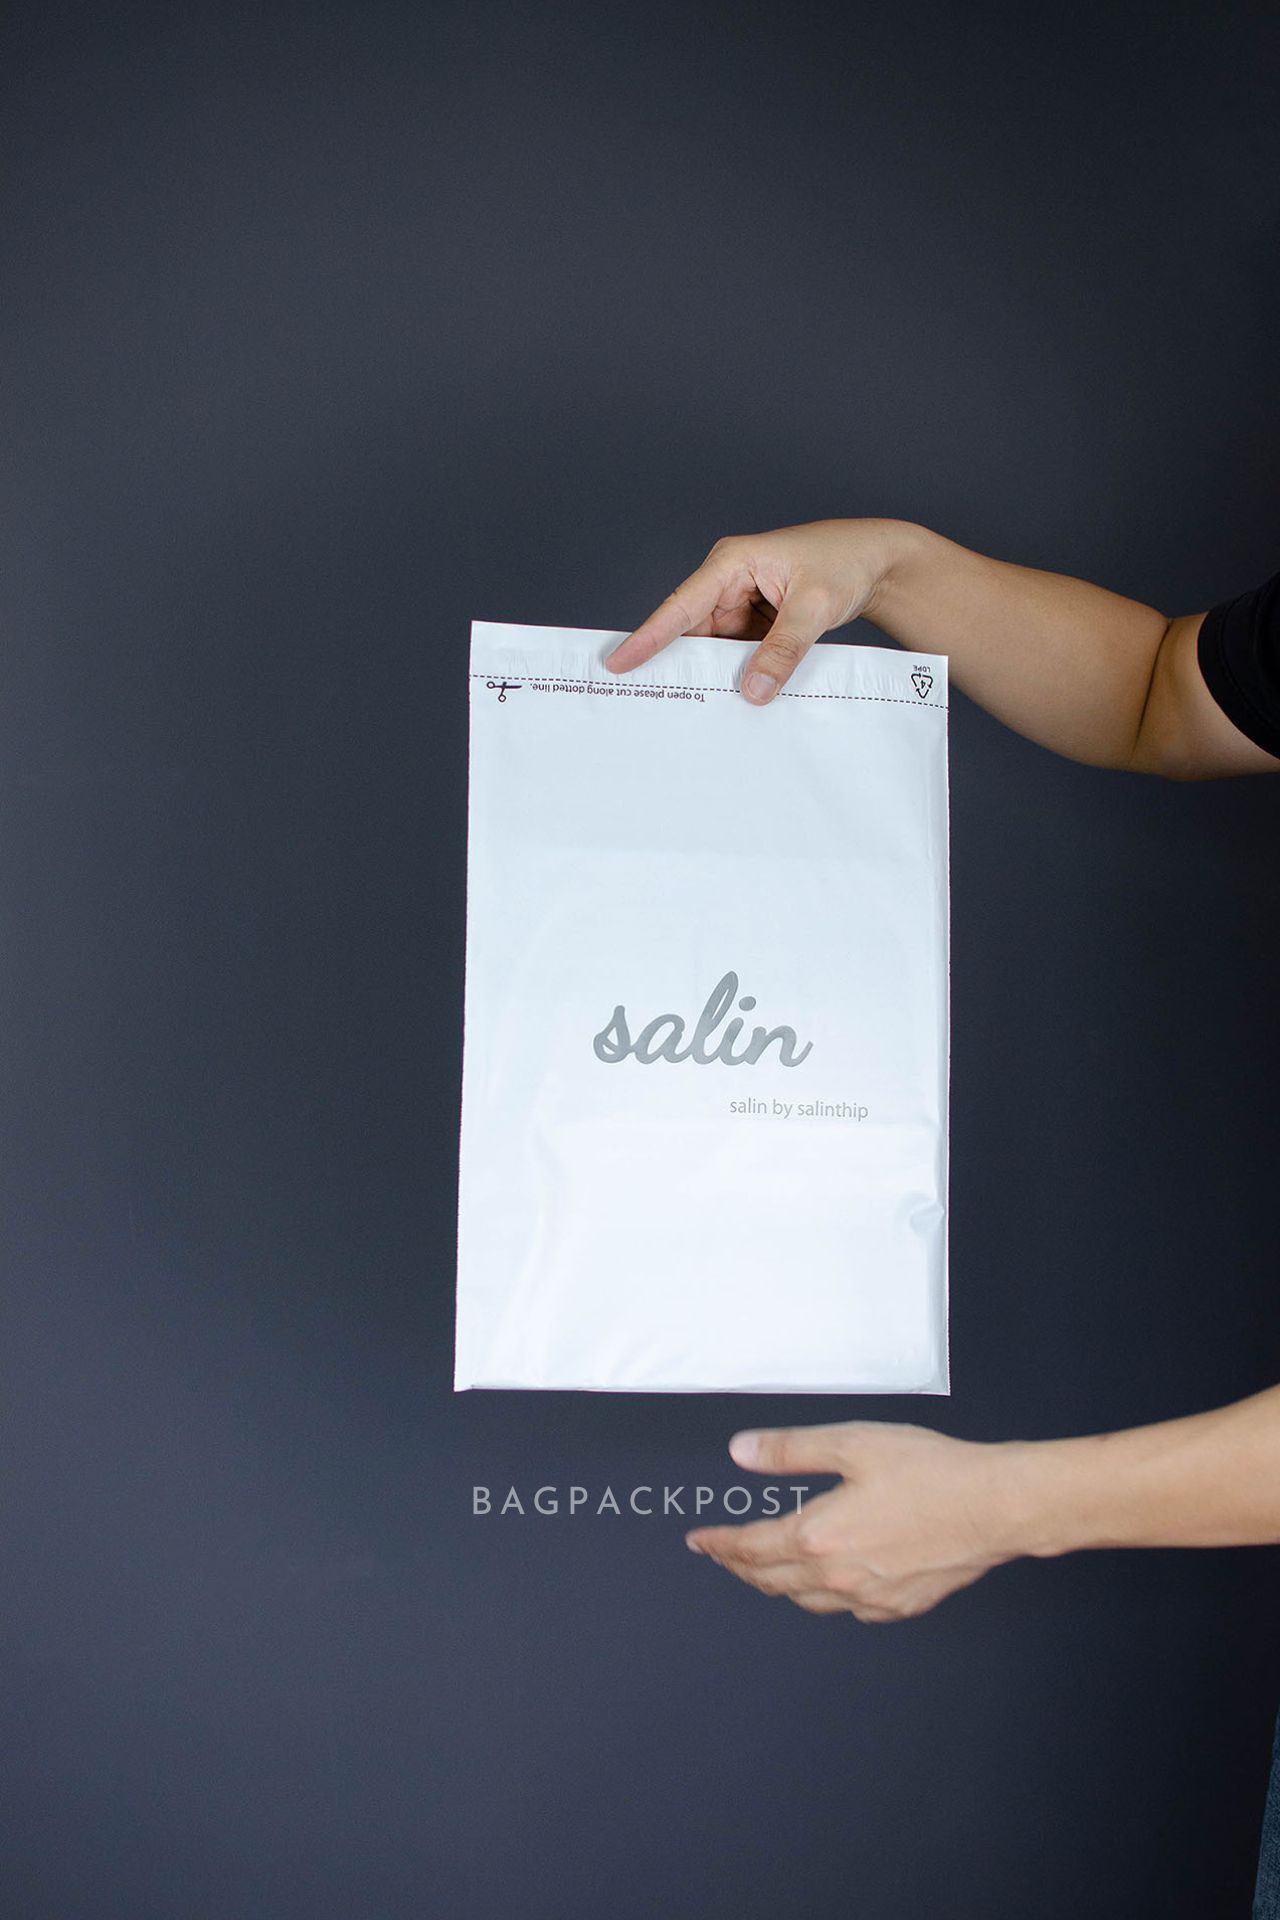 ผลิตถุงไปรษณีย์ ถุงพัสดุ ซองไปรษณีย์พิมพ์ลาย Salin ซองไปรษณีย์สีขาว ถุงไปรษณีย์พิมพ์ลาย 3 BagPackPost